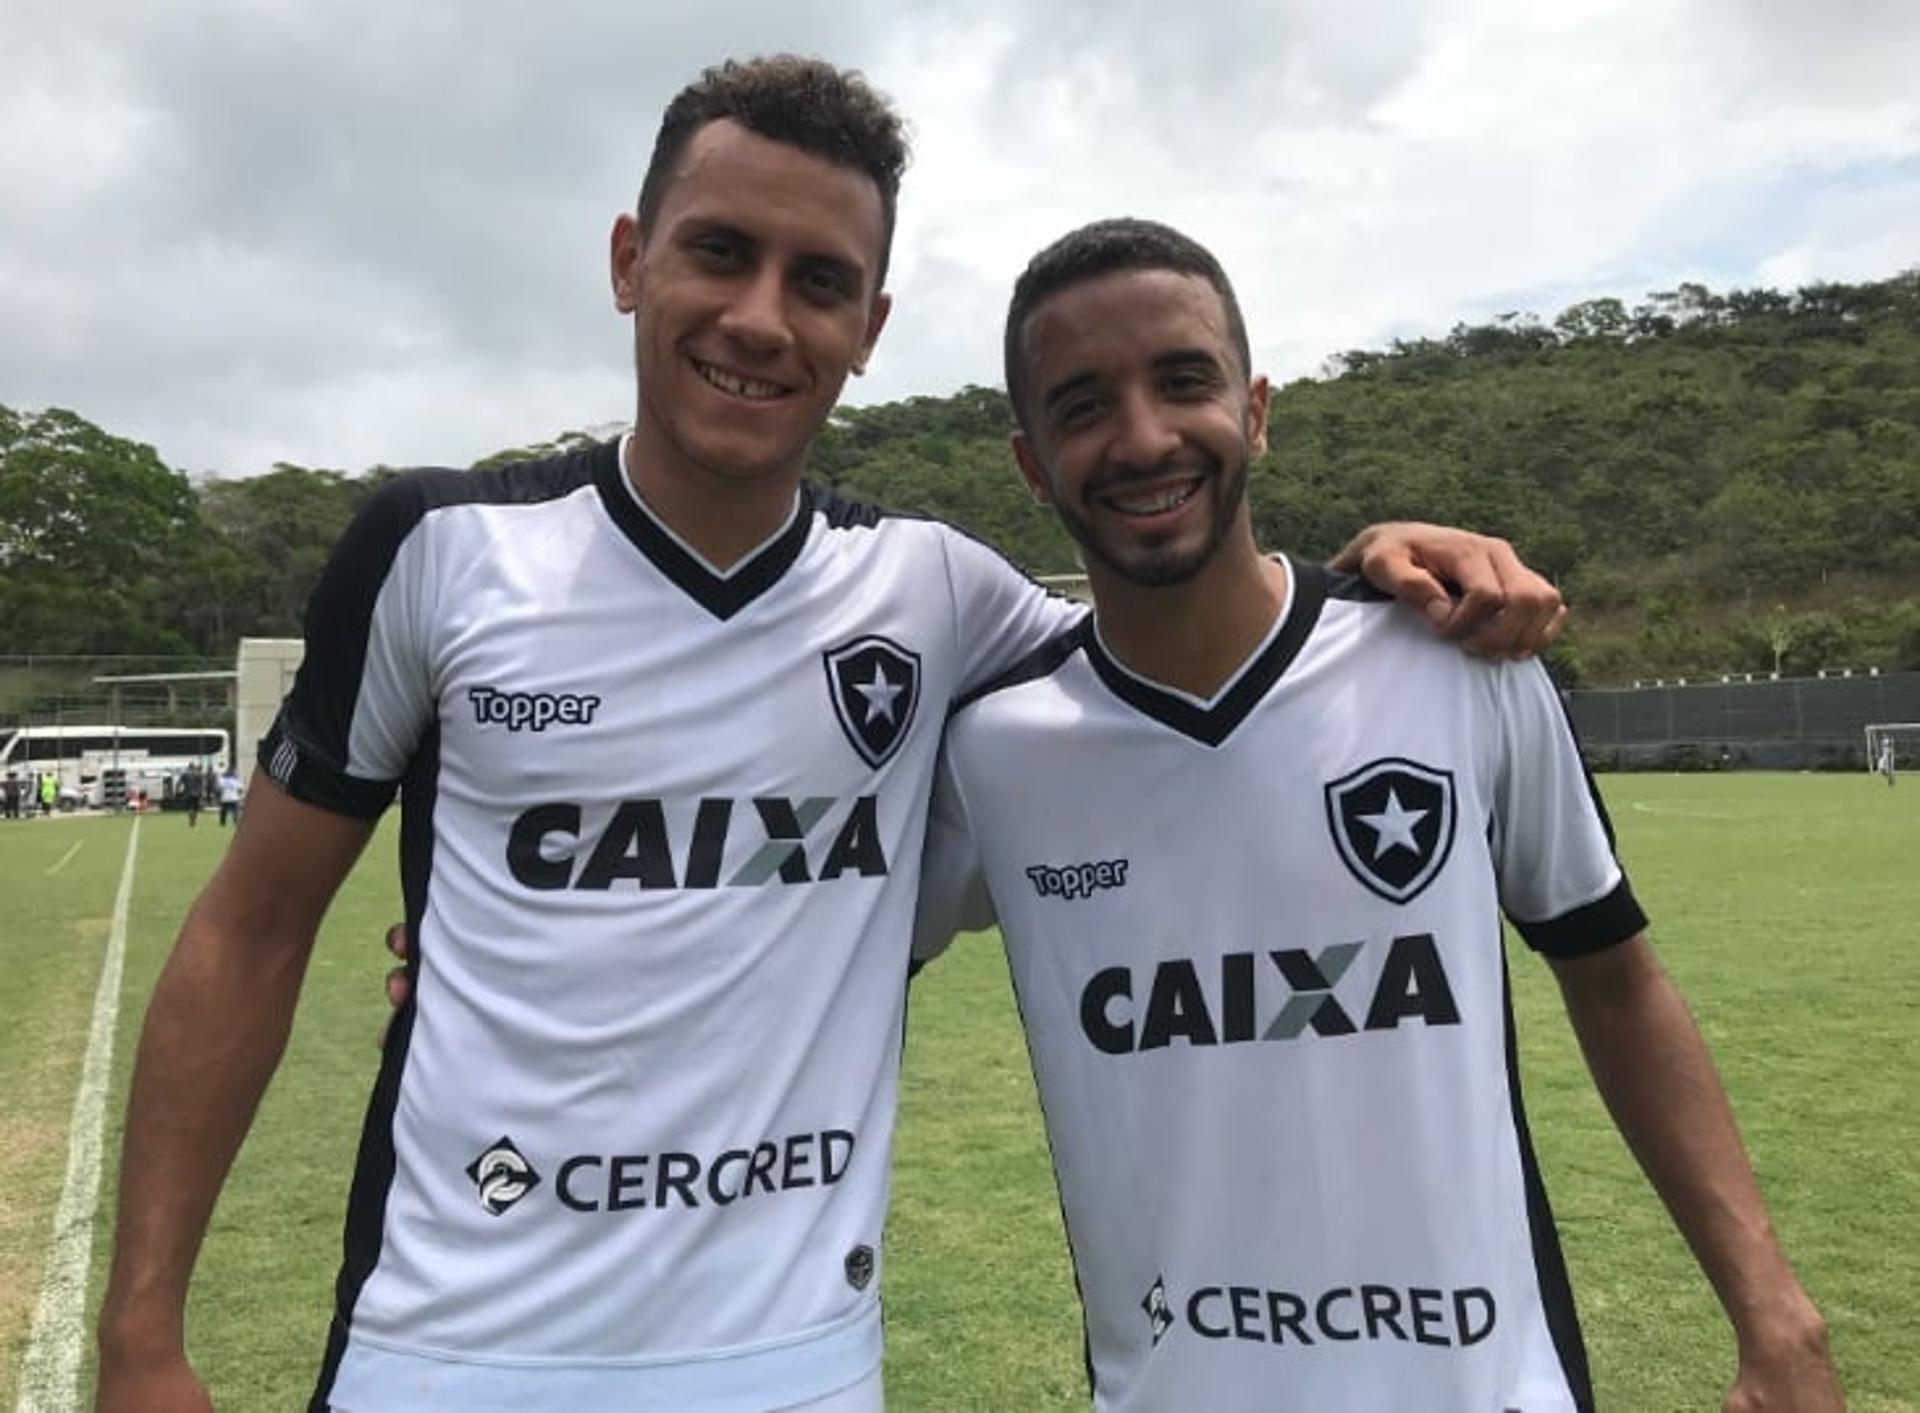 Renan Gorne e Caio Alexandre - Botafogo